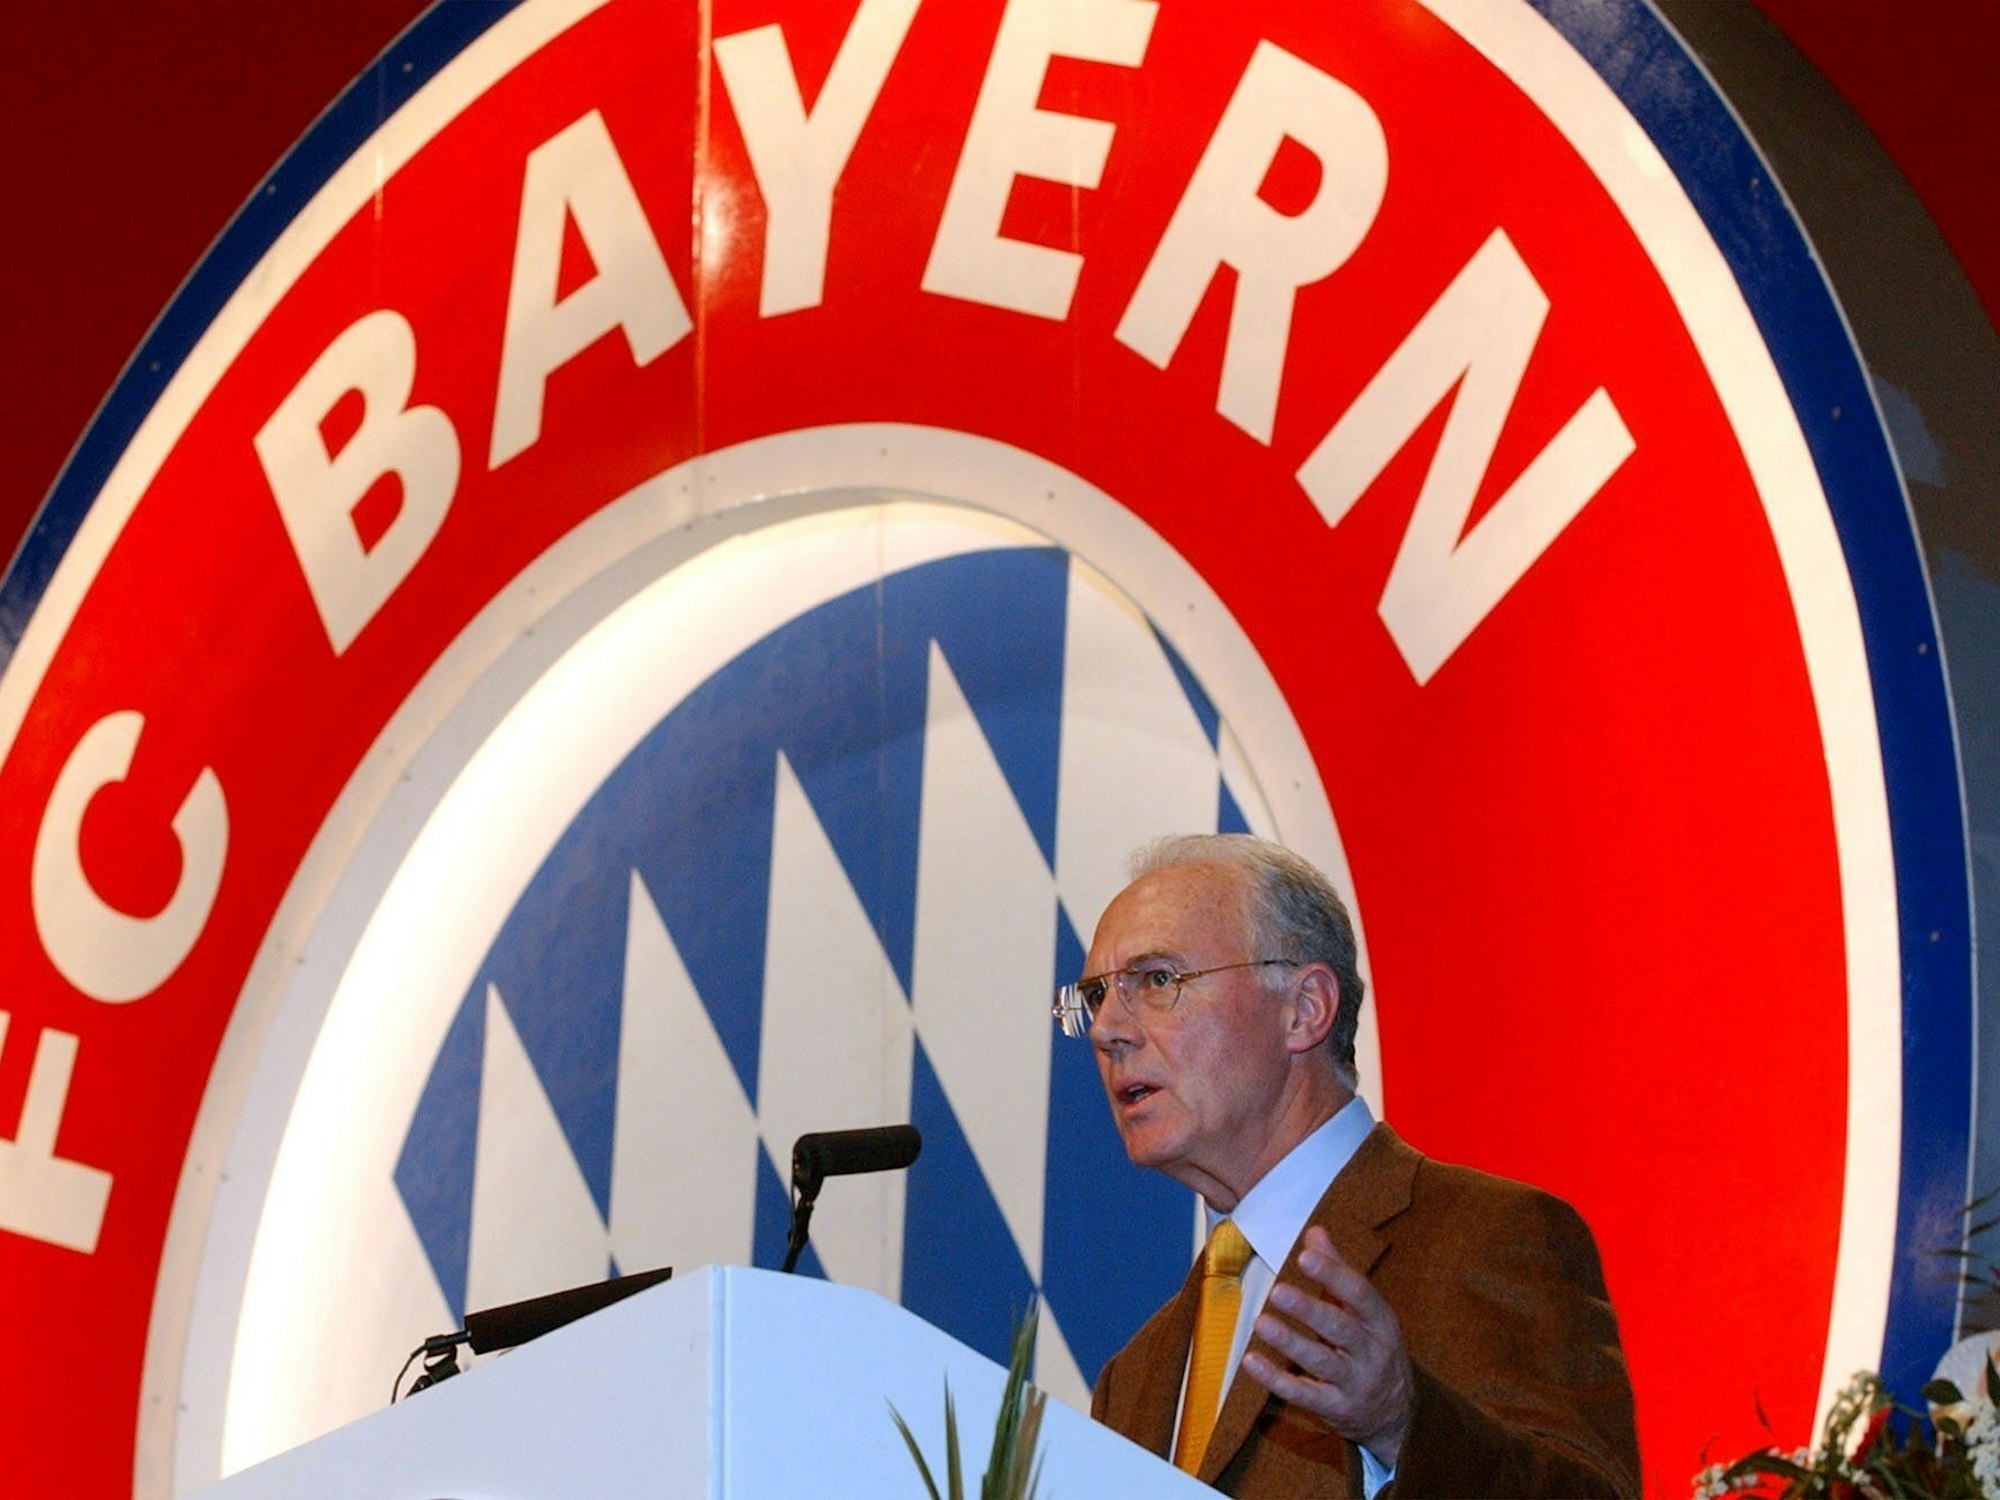 Der Präsident des FC Bayern München, Franz Beckenbauer, spricht auf der Jahreshauptversammlung.